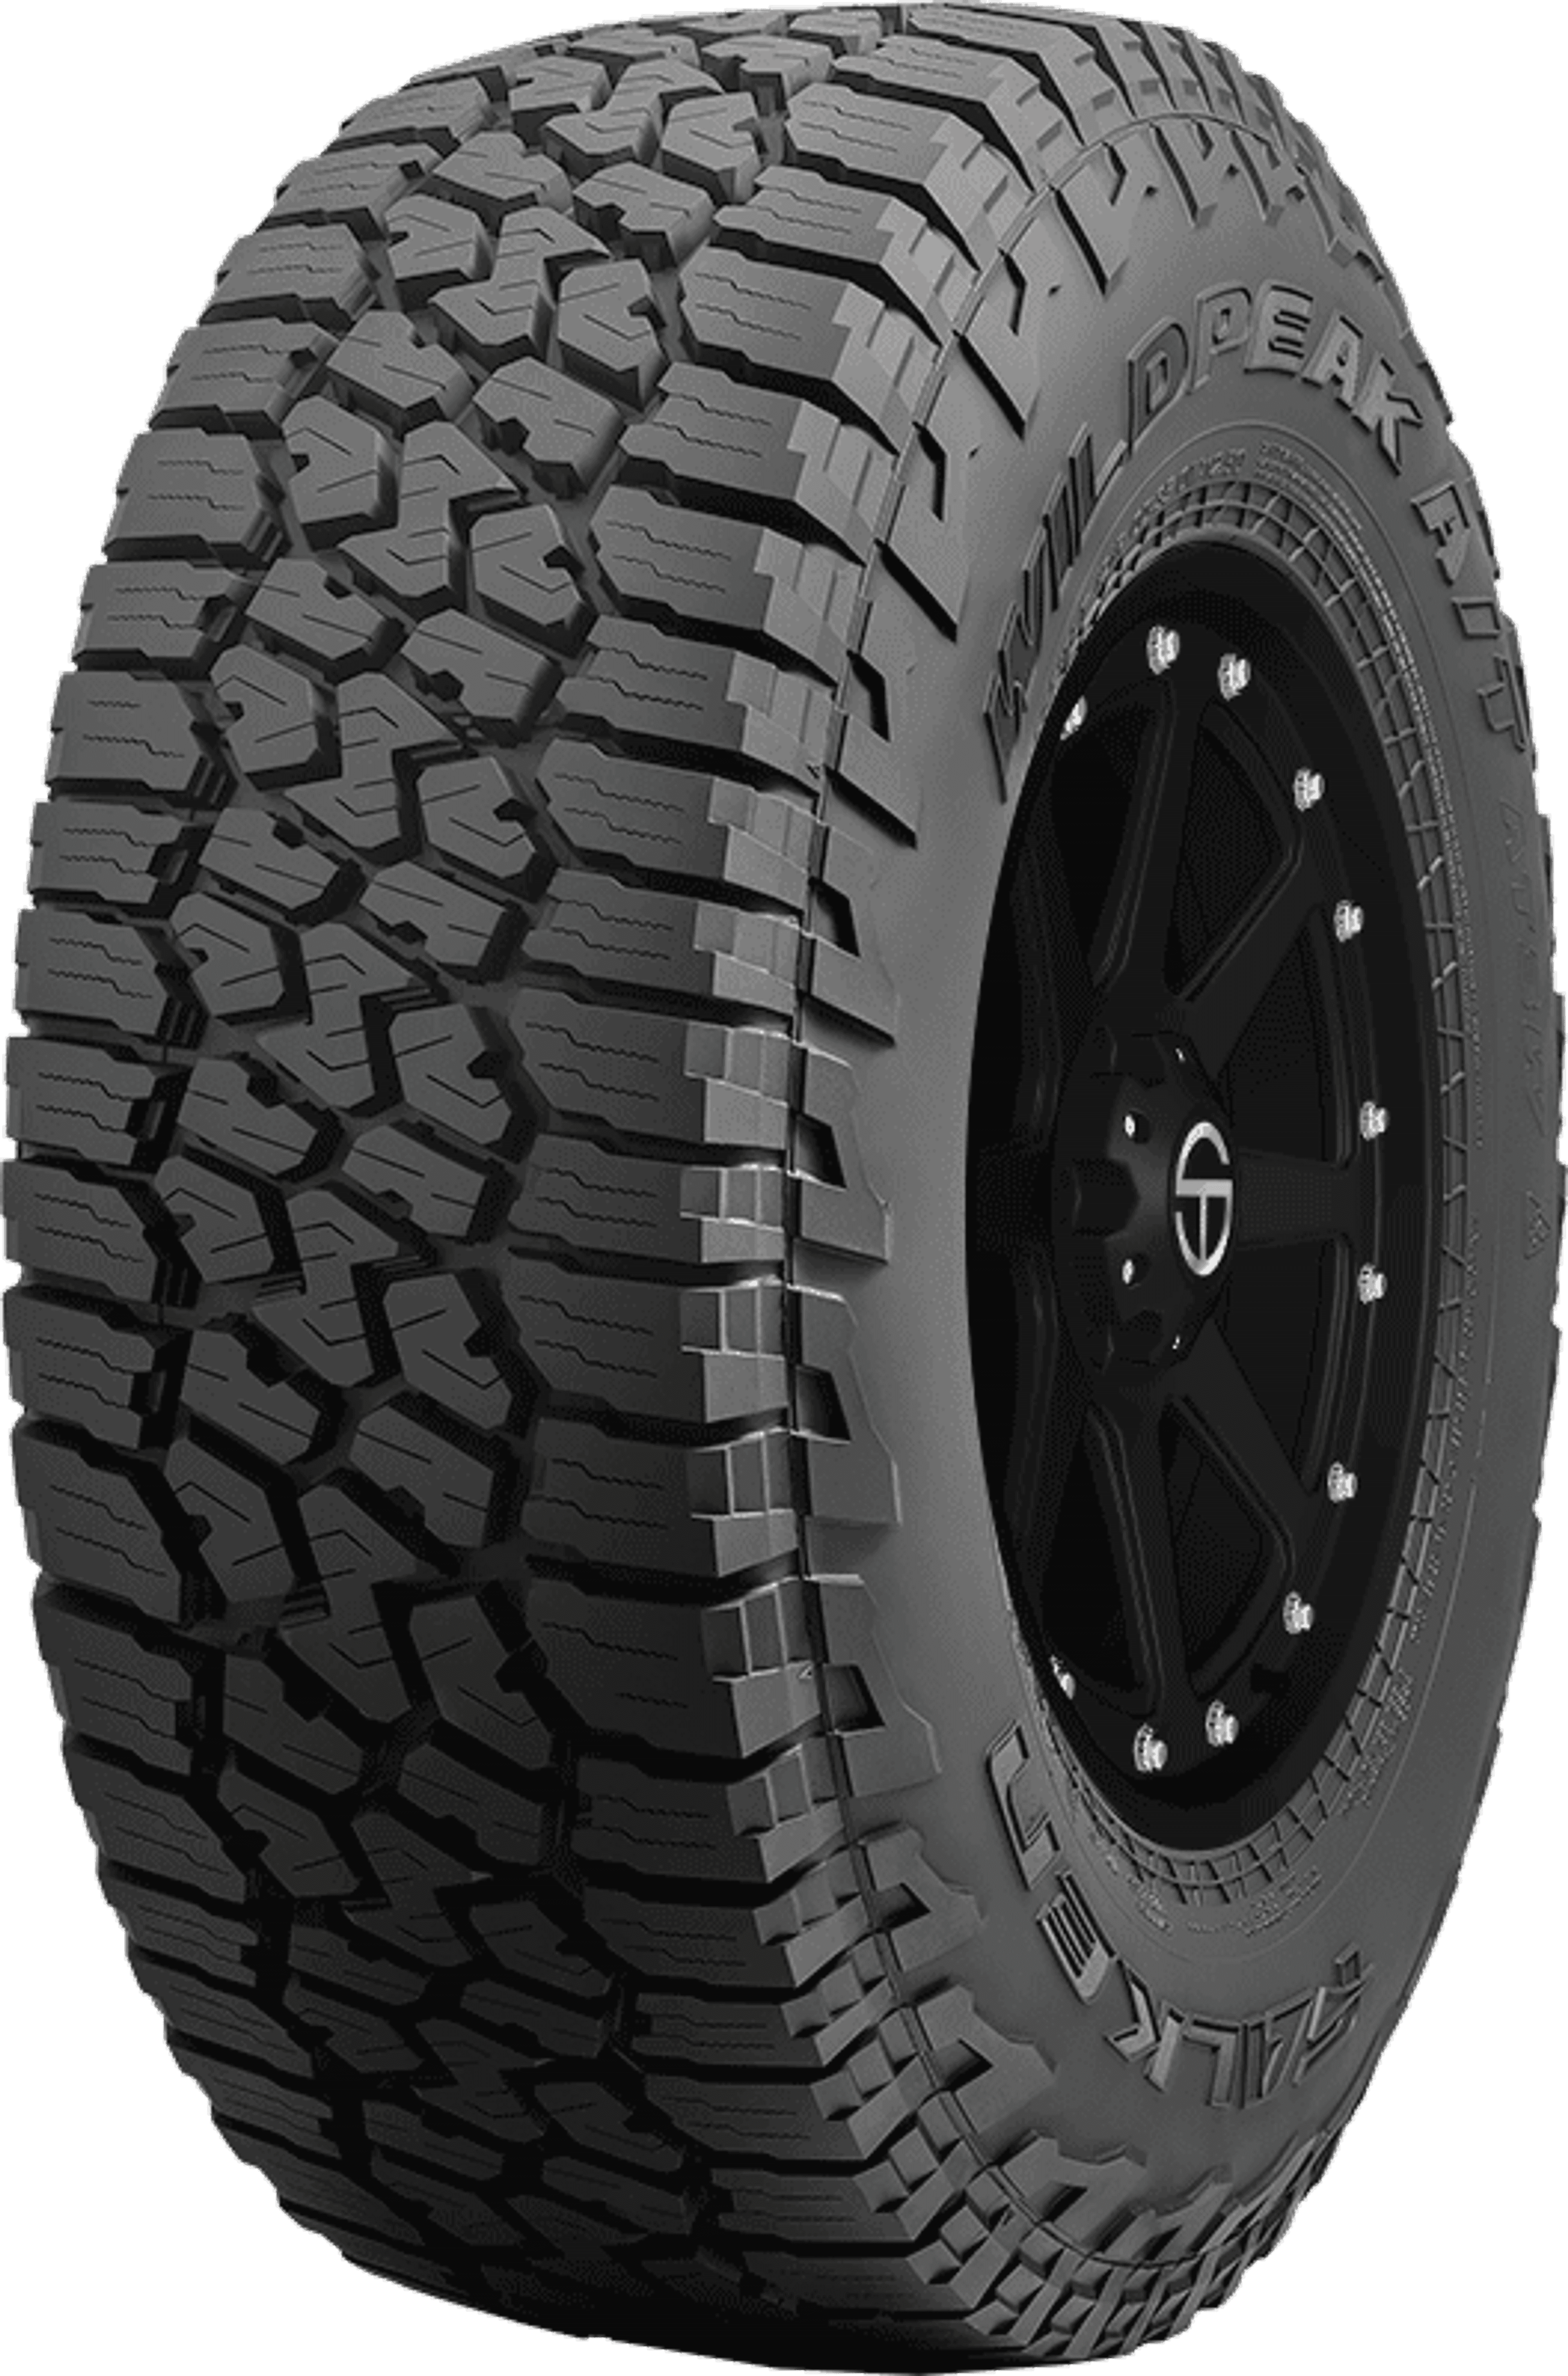 Buy Falken Wildpeak A/T3W Tires Online | SimpleTire